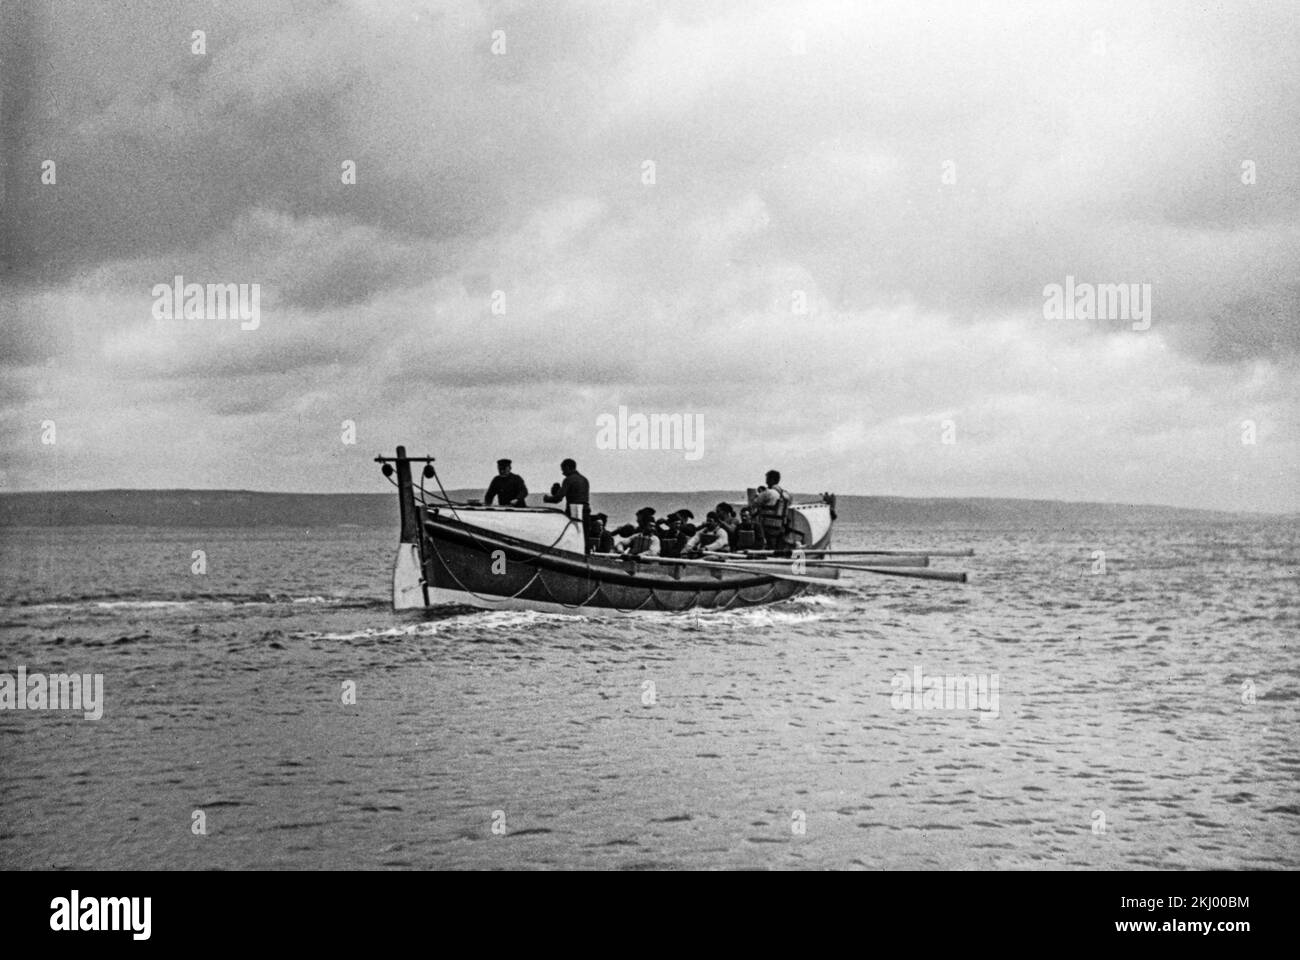 Una fotografia in bianco e nero della fine del 19th o degli inizi del 20th secolo che mostra una Life Boat che viene solcata da un membro della Royal National Lifeboat Institution, sulle acque costiere dell'Inghilterra. Foto Stock